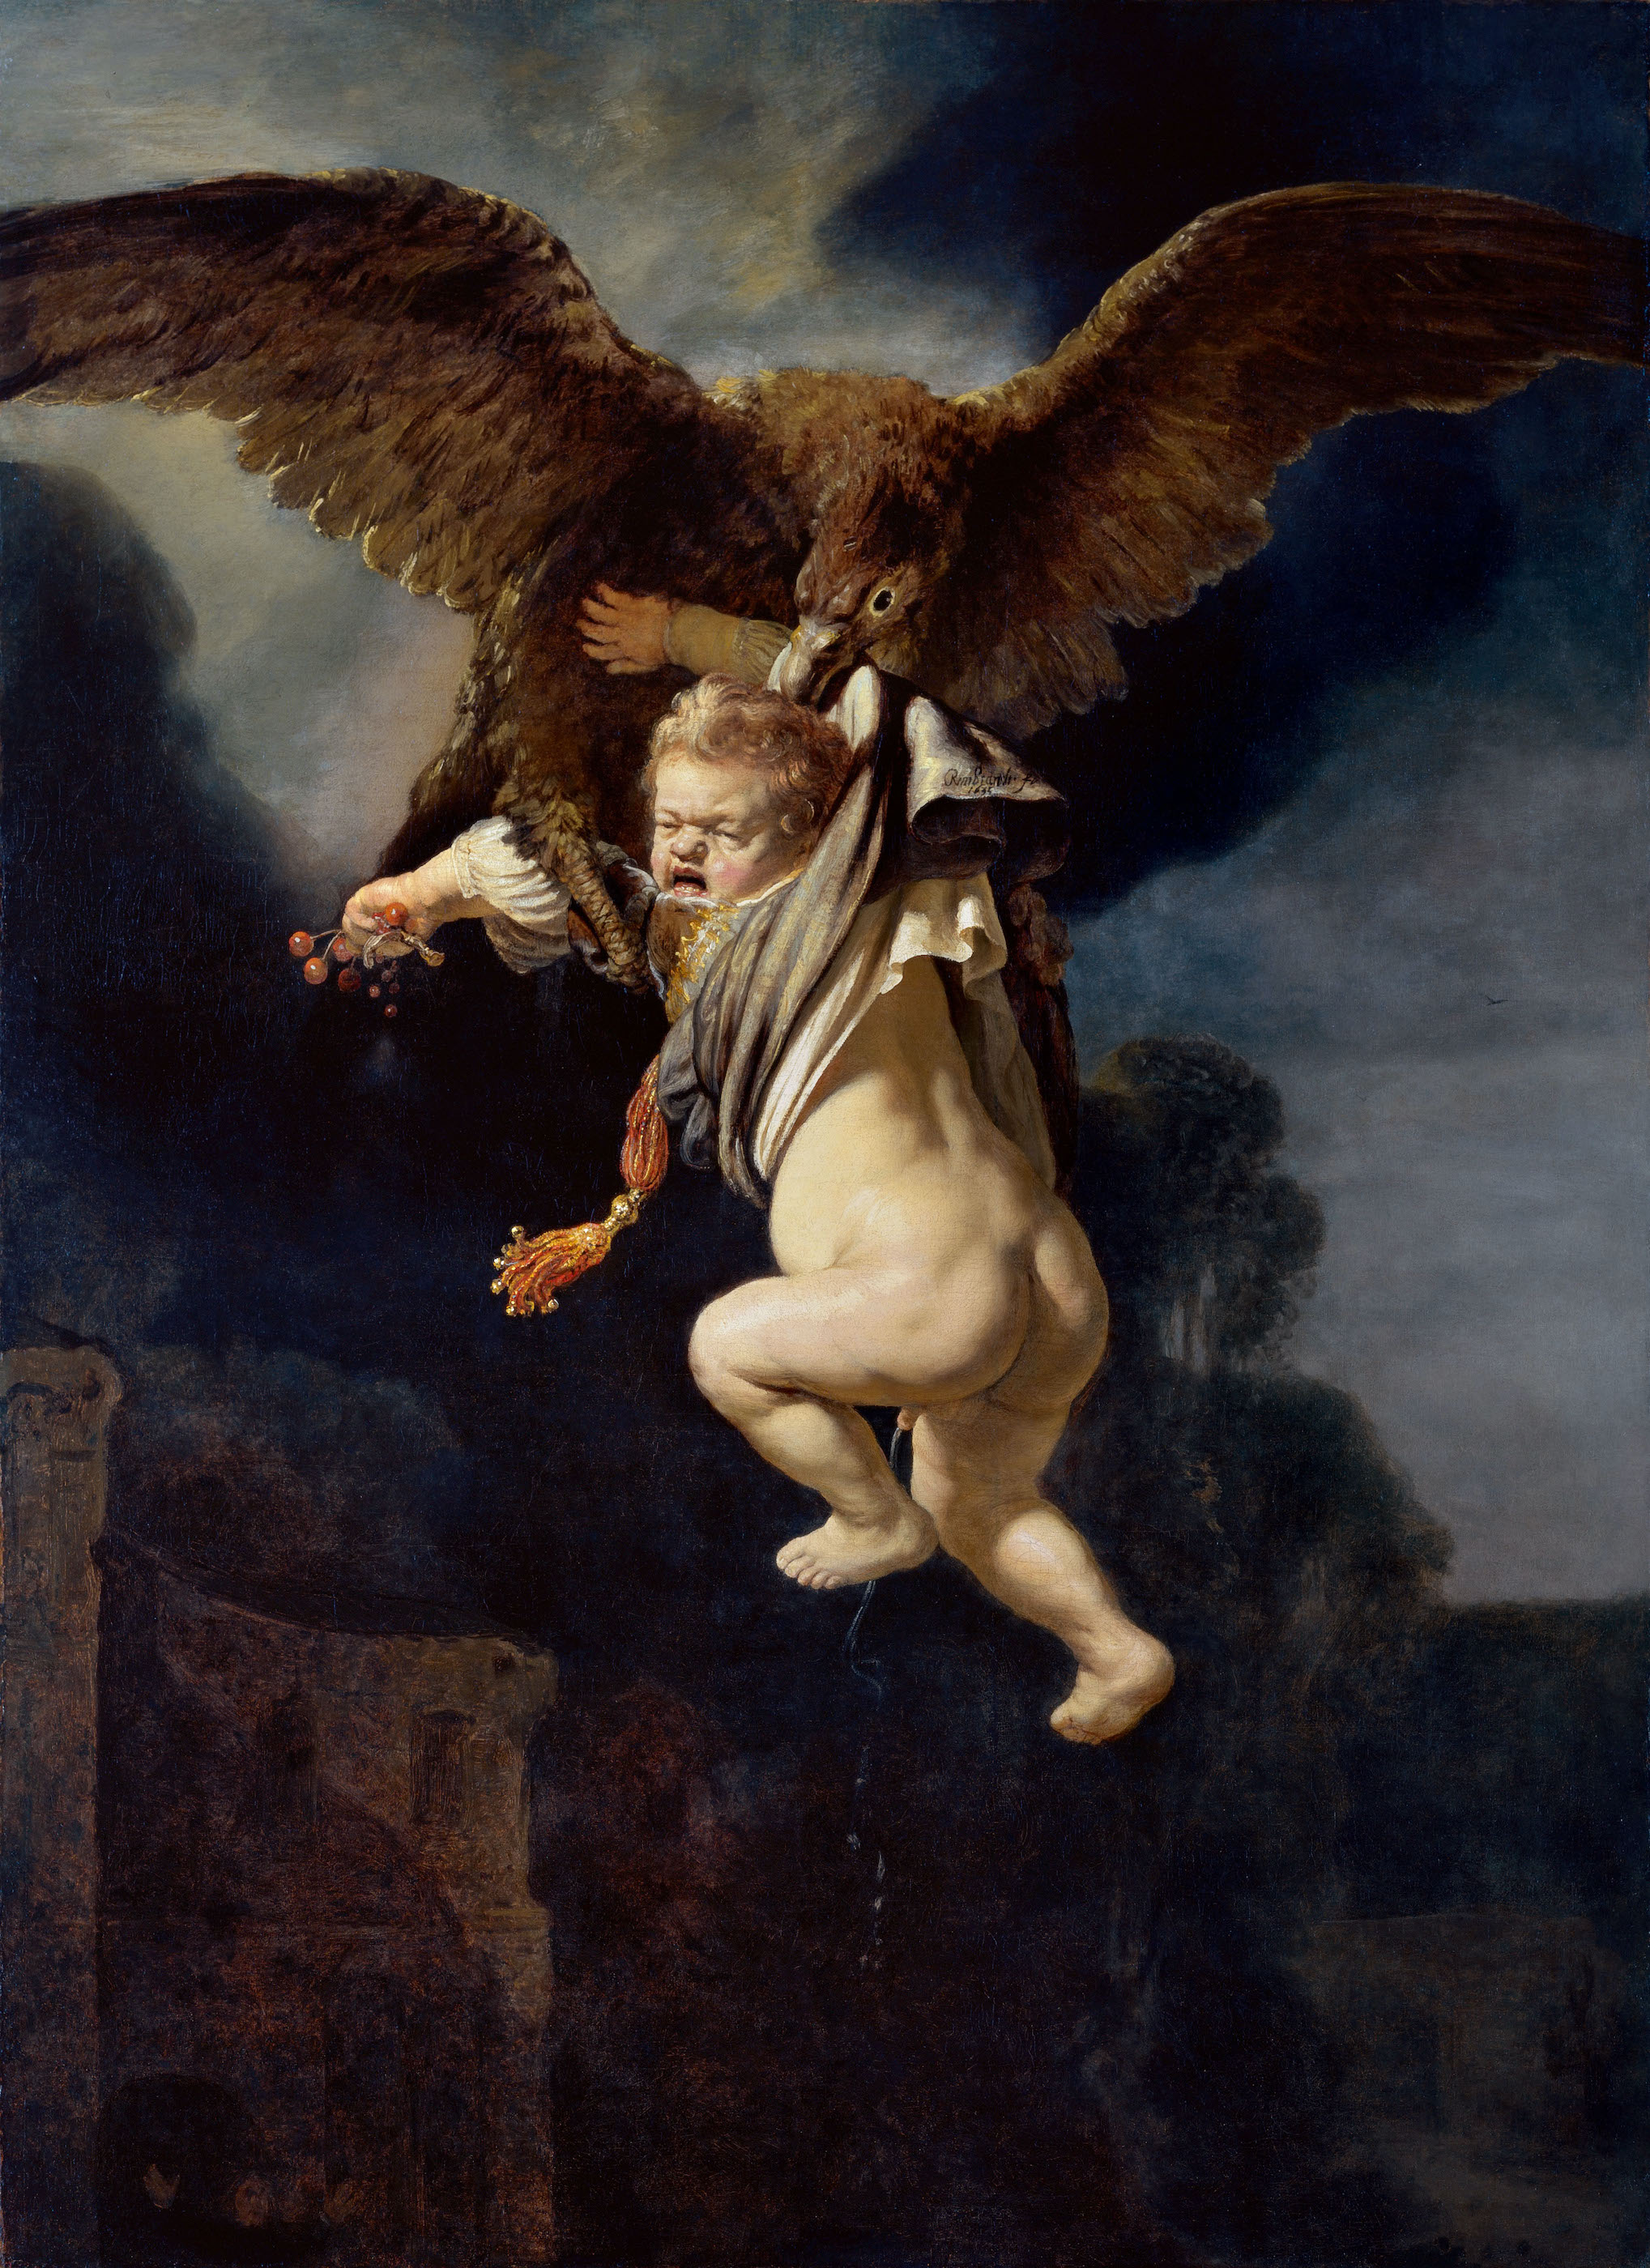 L' Enlèvement de Ganymède by Rembrandt van Rijn - 1635 - 129 x 177 cm Staatliche Kunstsammlungen Dresden